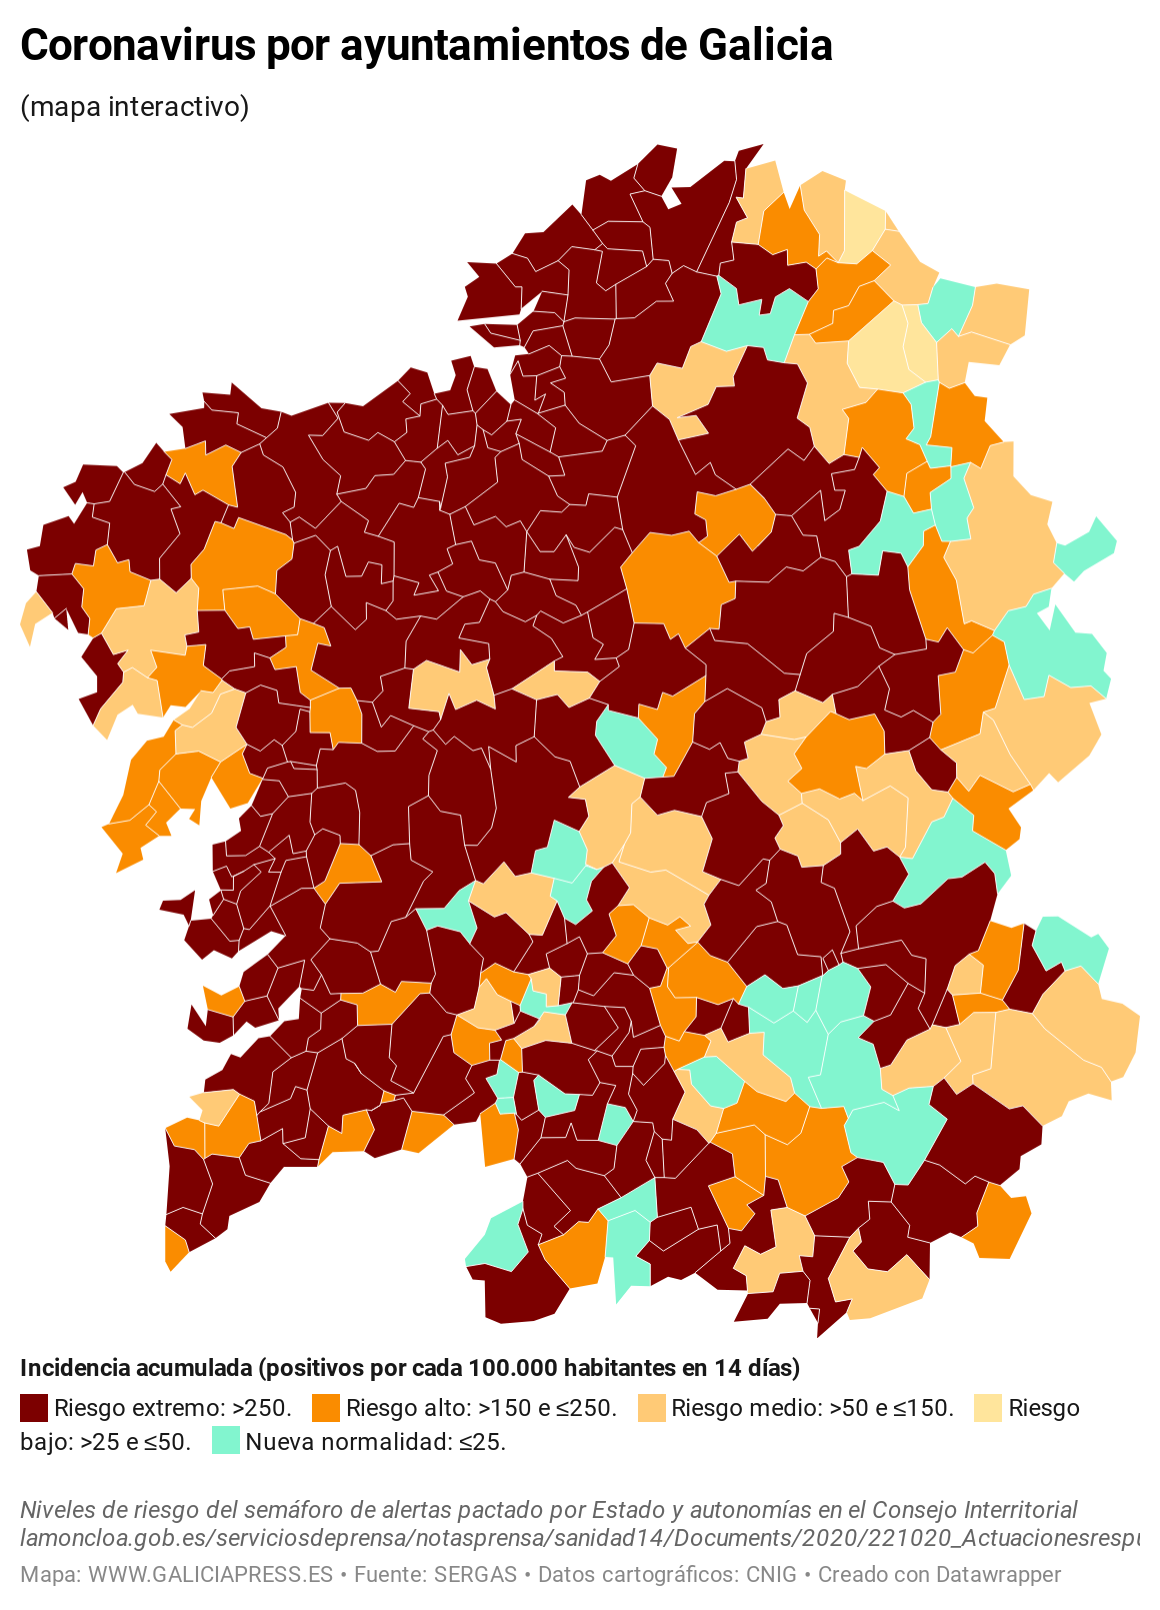 KV7EO coronavirus por ayuntamientos de galicia  (10)